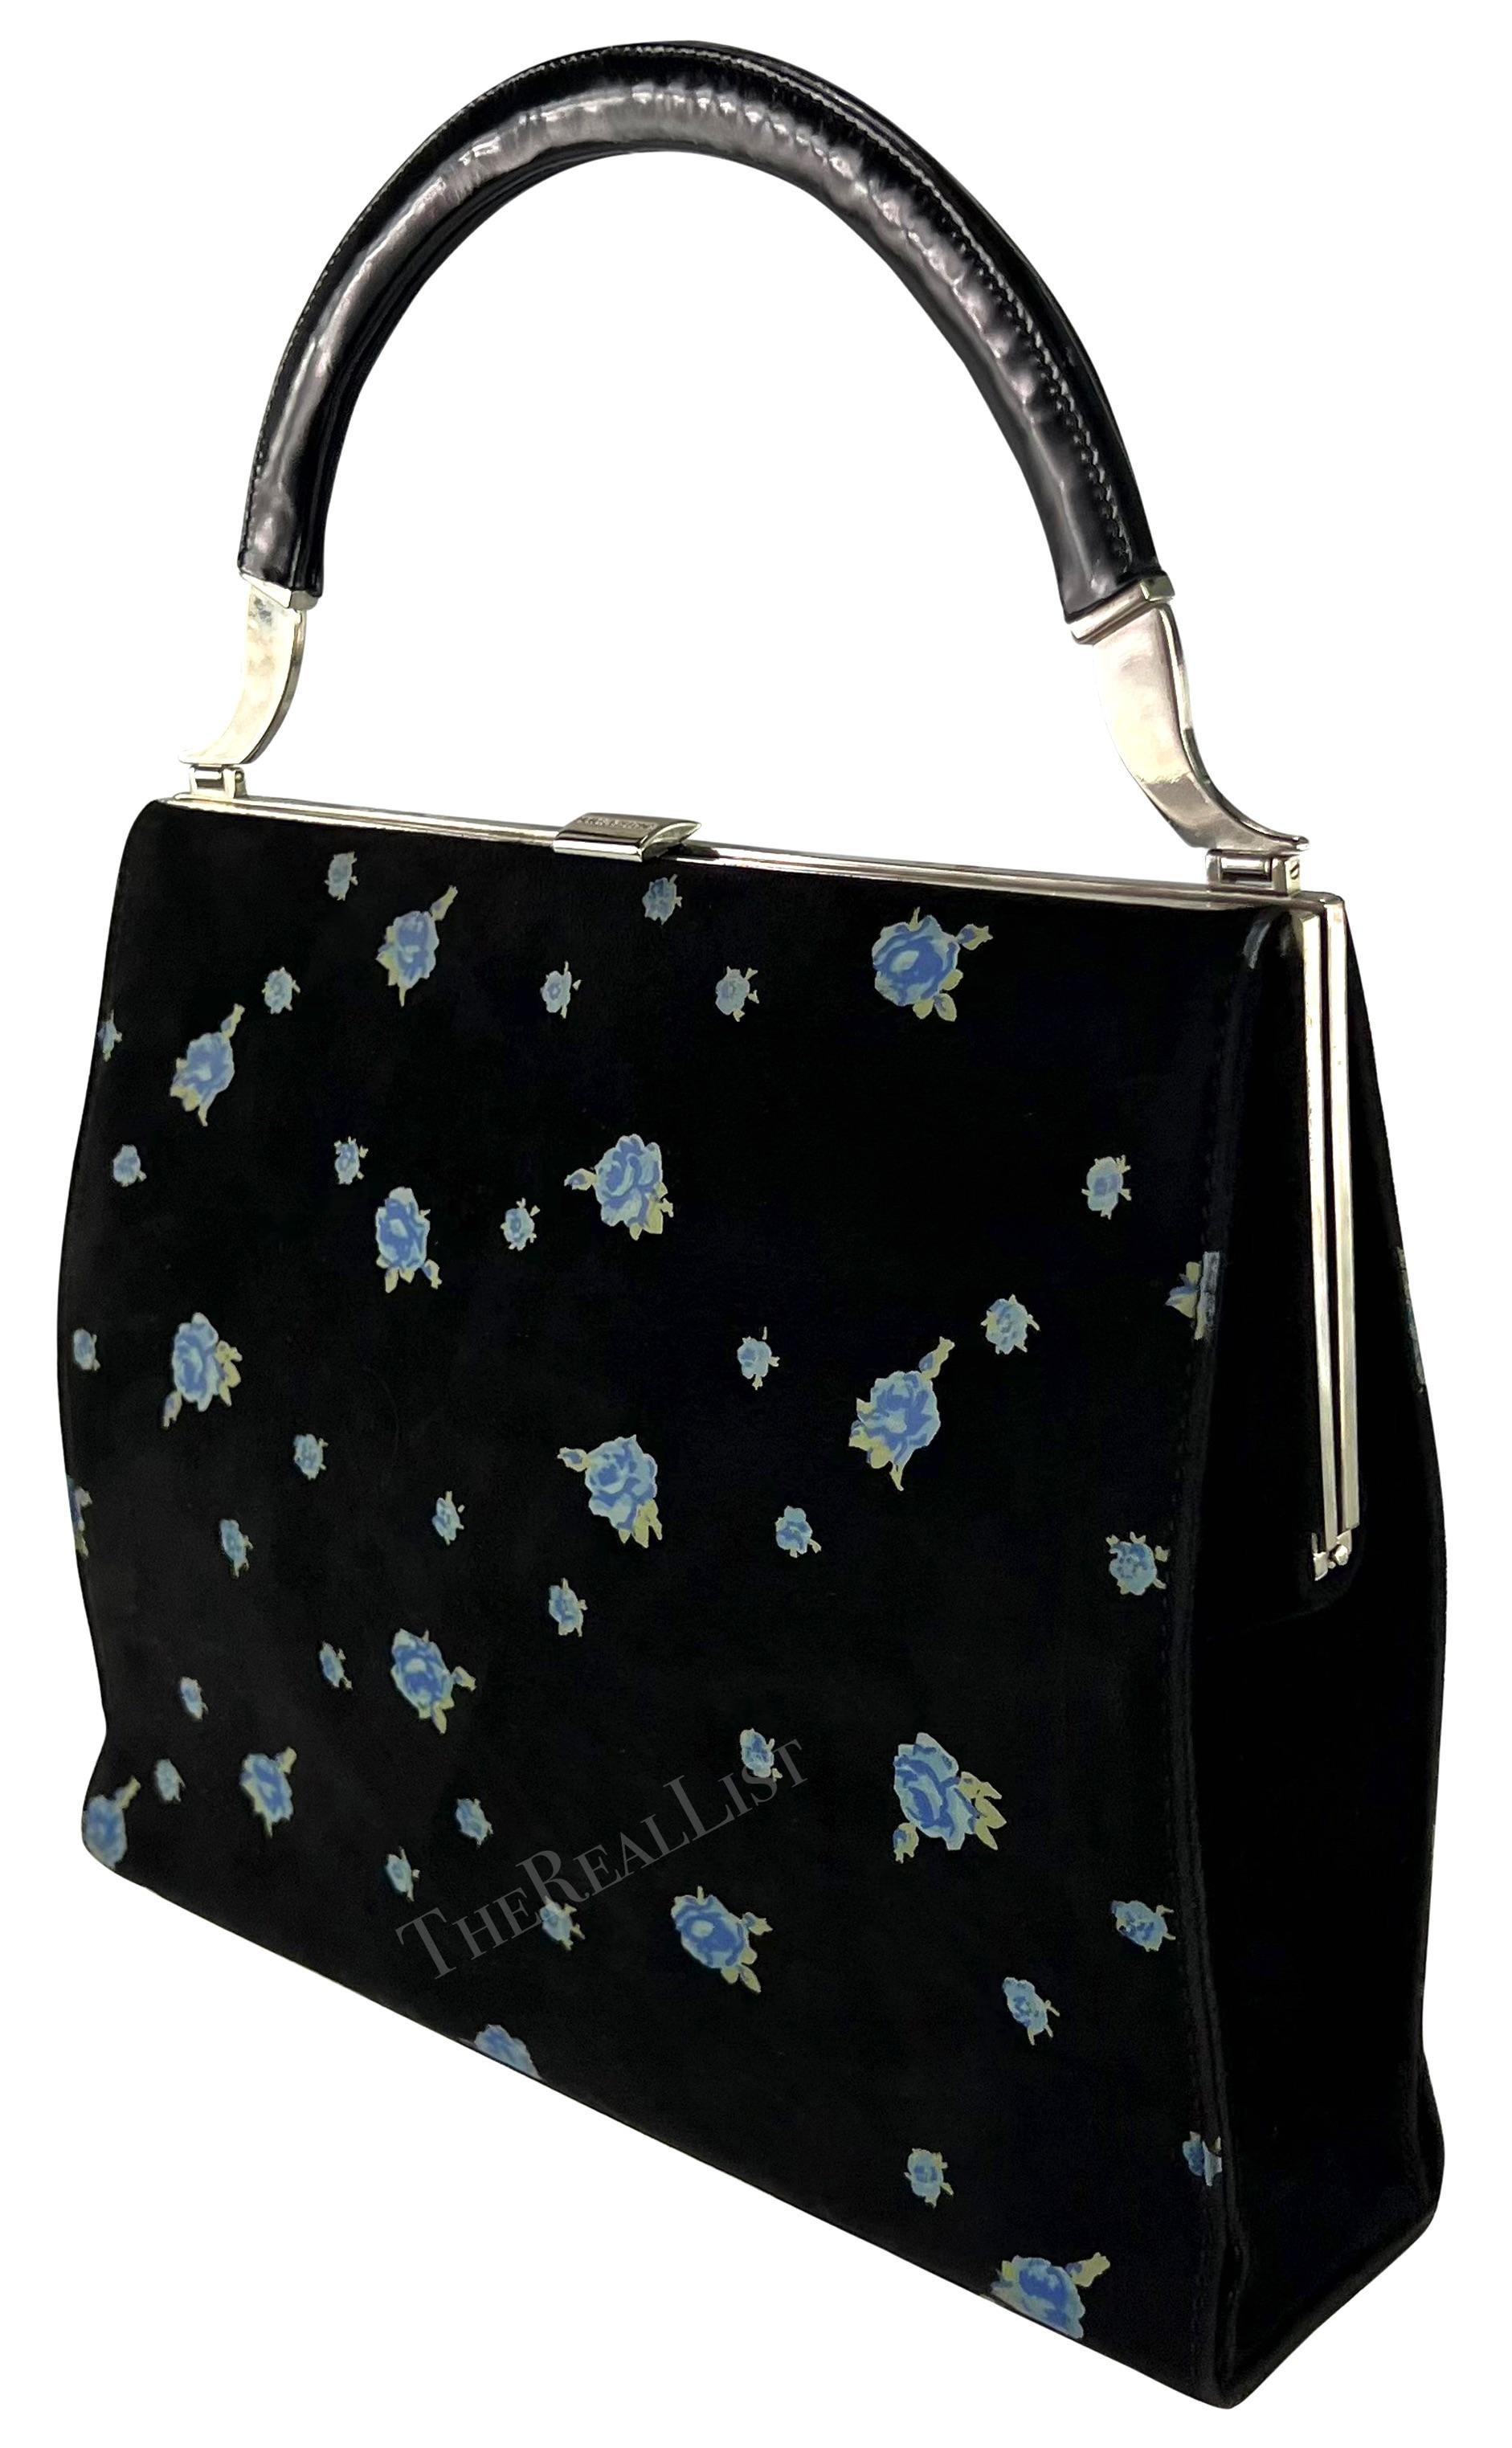 Ein fabelhaftes schwarzes Wildleder Dolce & Gabbana oberen Griff Tasche aus den 1990er Jahren. Die aus Wildleder gefertigte Tasche ist mit einem auffälligen blauen Rosenprint versehen. Der obere Griff besteht aus einem glänzenden schwarzen Griff und